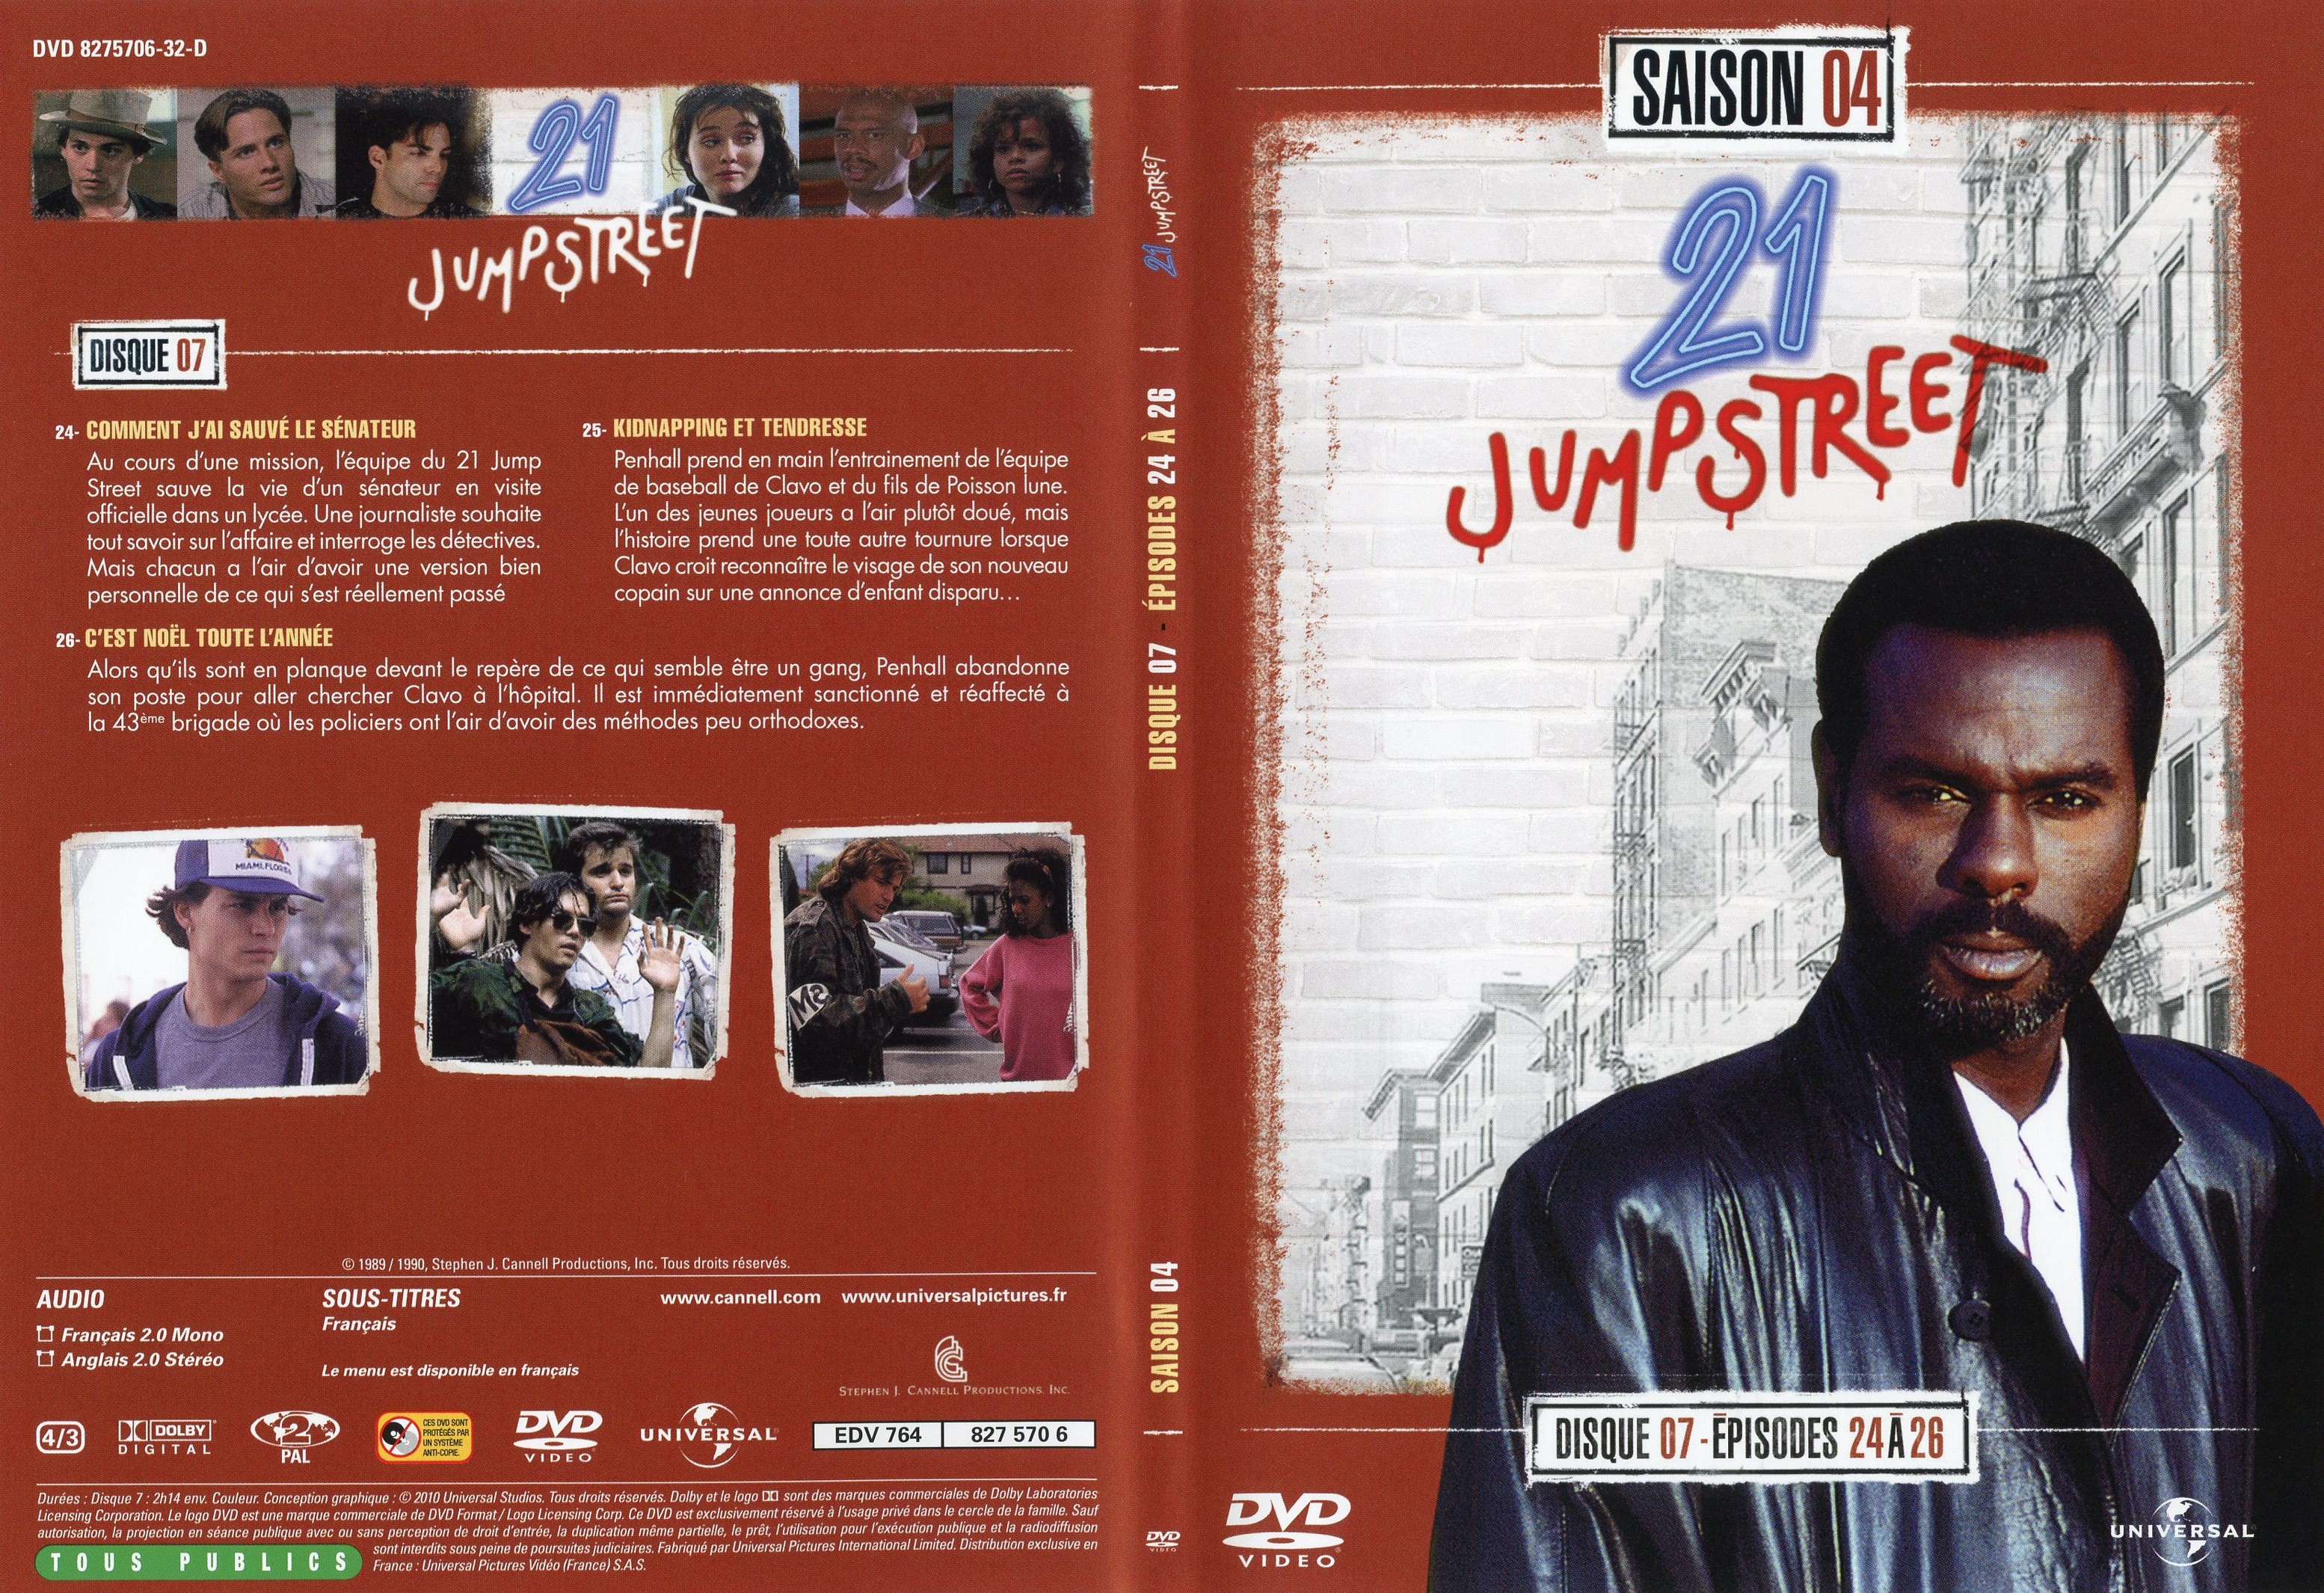 Jaquette DVD 21 jump street Saison 4 DVD 4